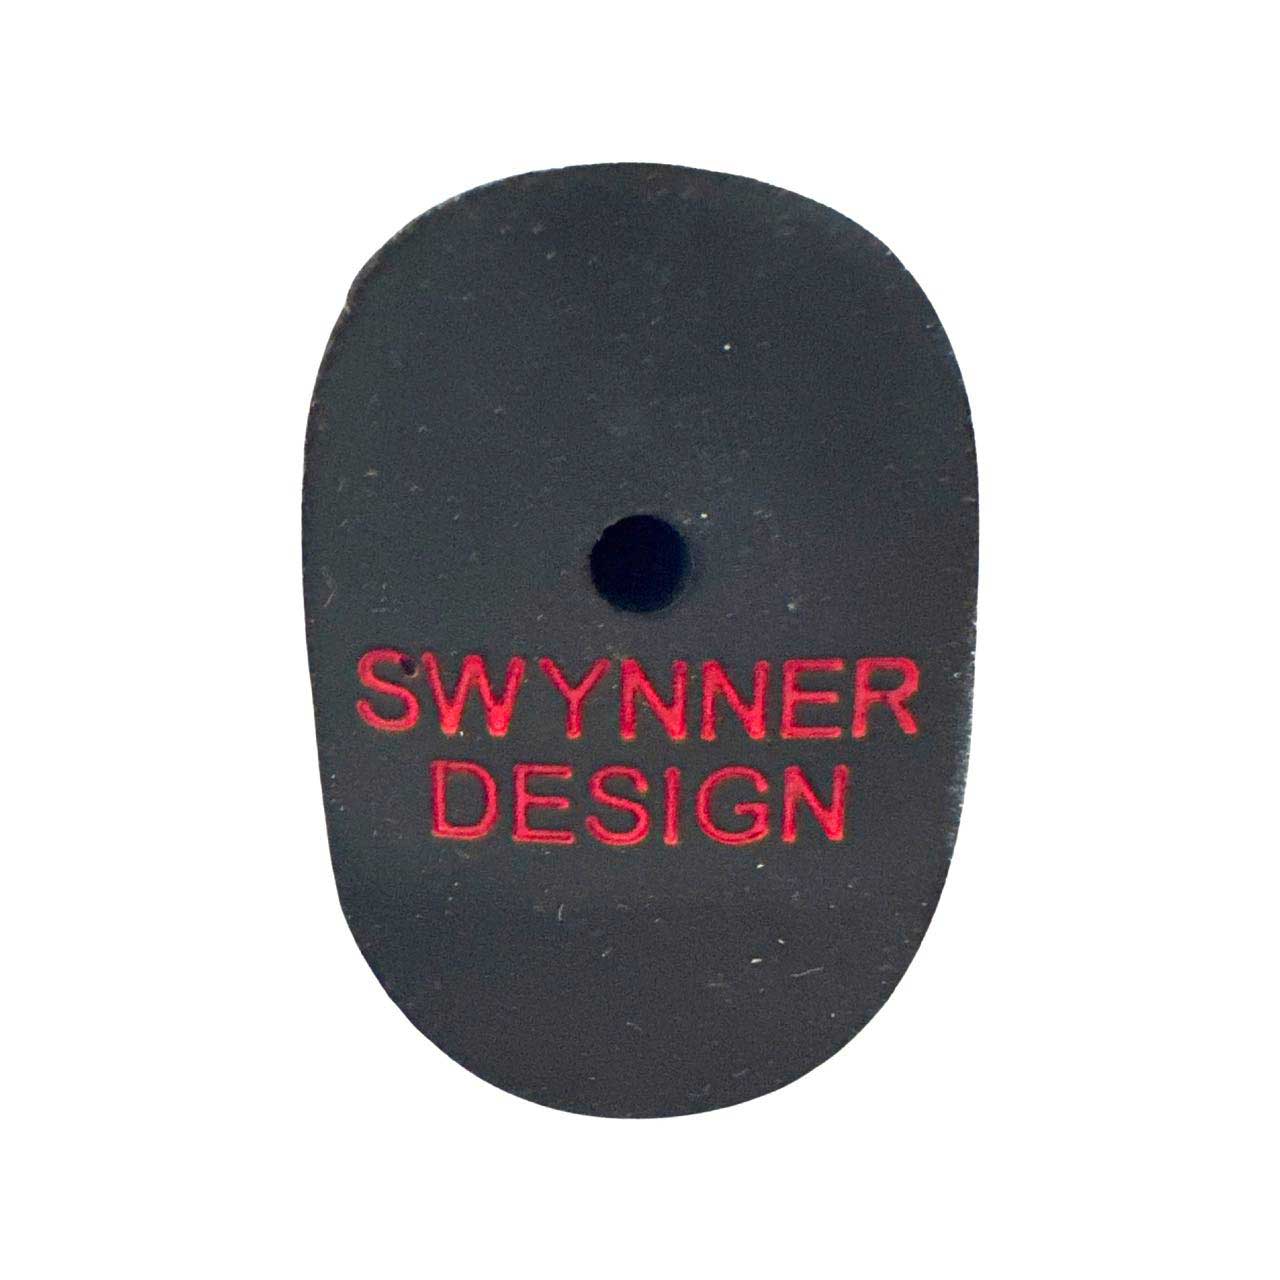 Swynner Design "Only Birdies" Pistolero Non Slip Putter Grip